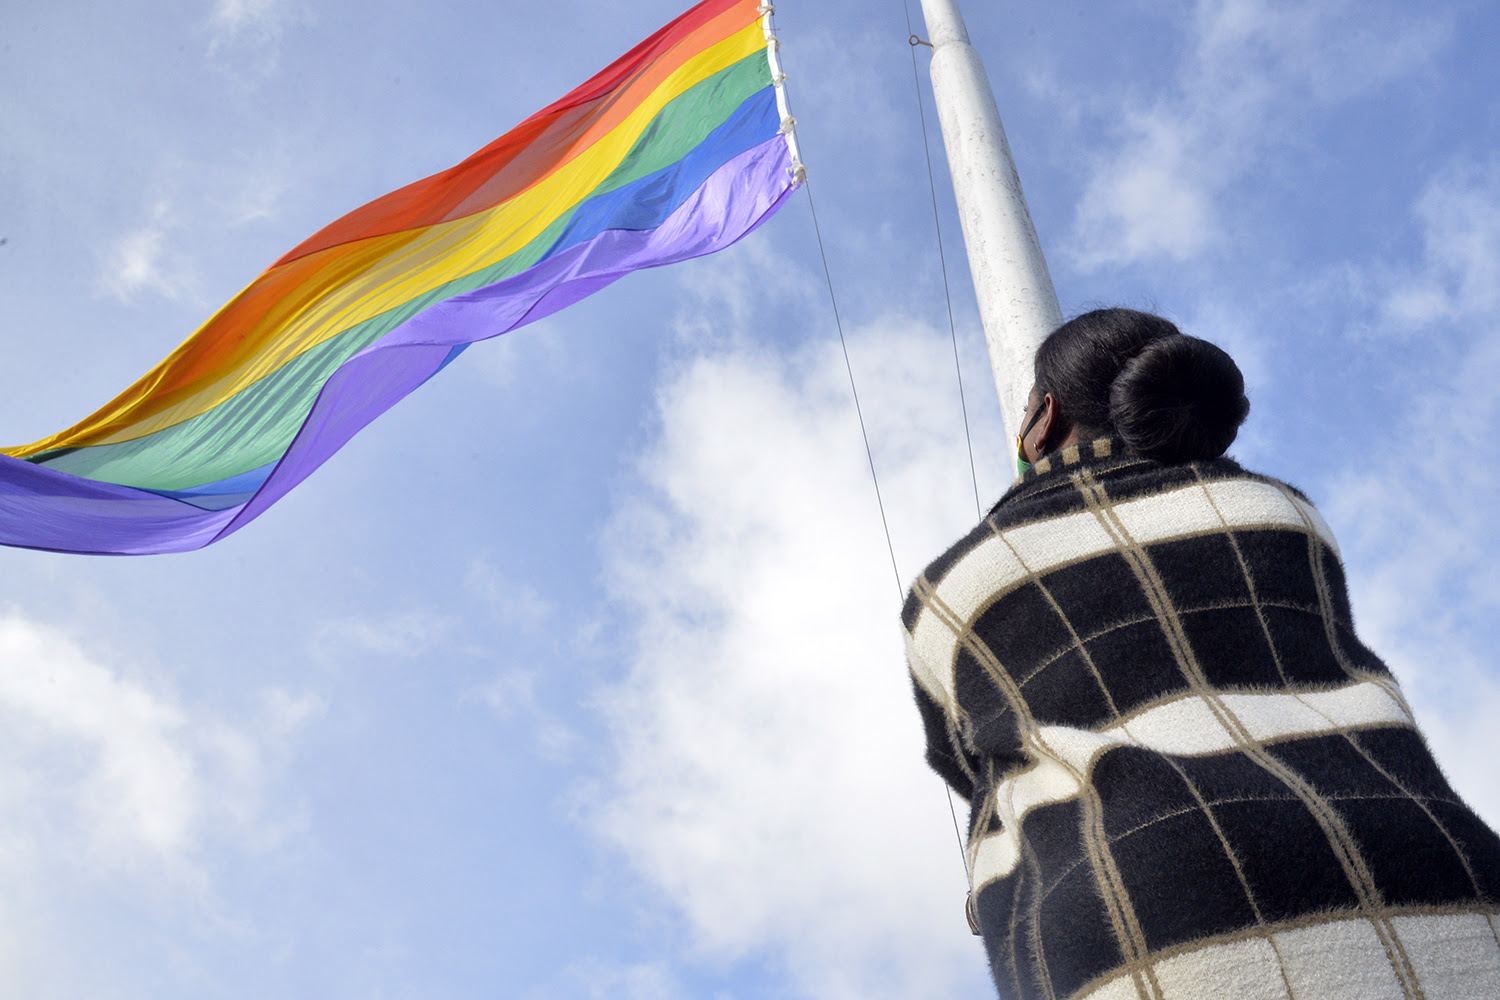  Gisela Zamora encabezó el izamiento de la bandera del Orgullo LGBTIQ+ en Tigre